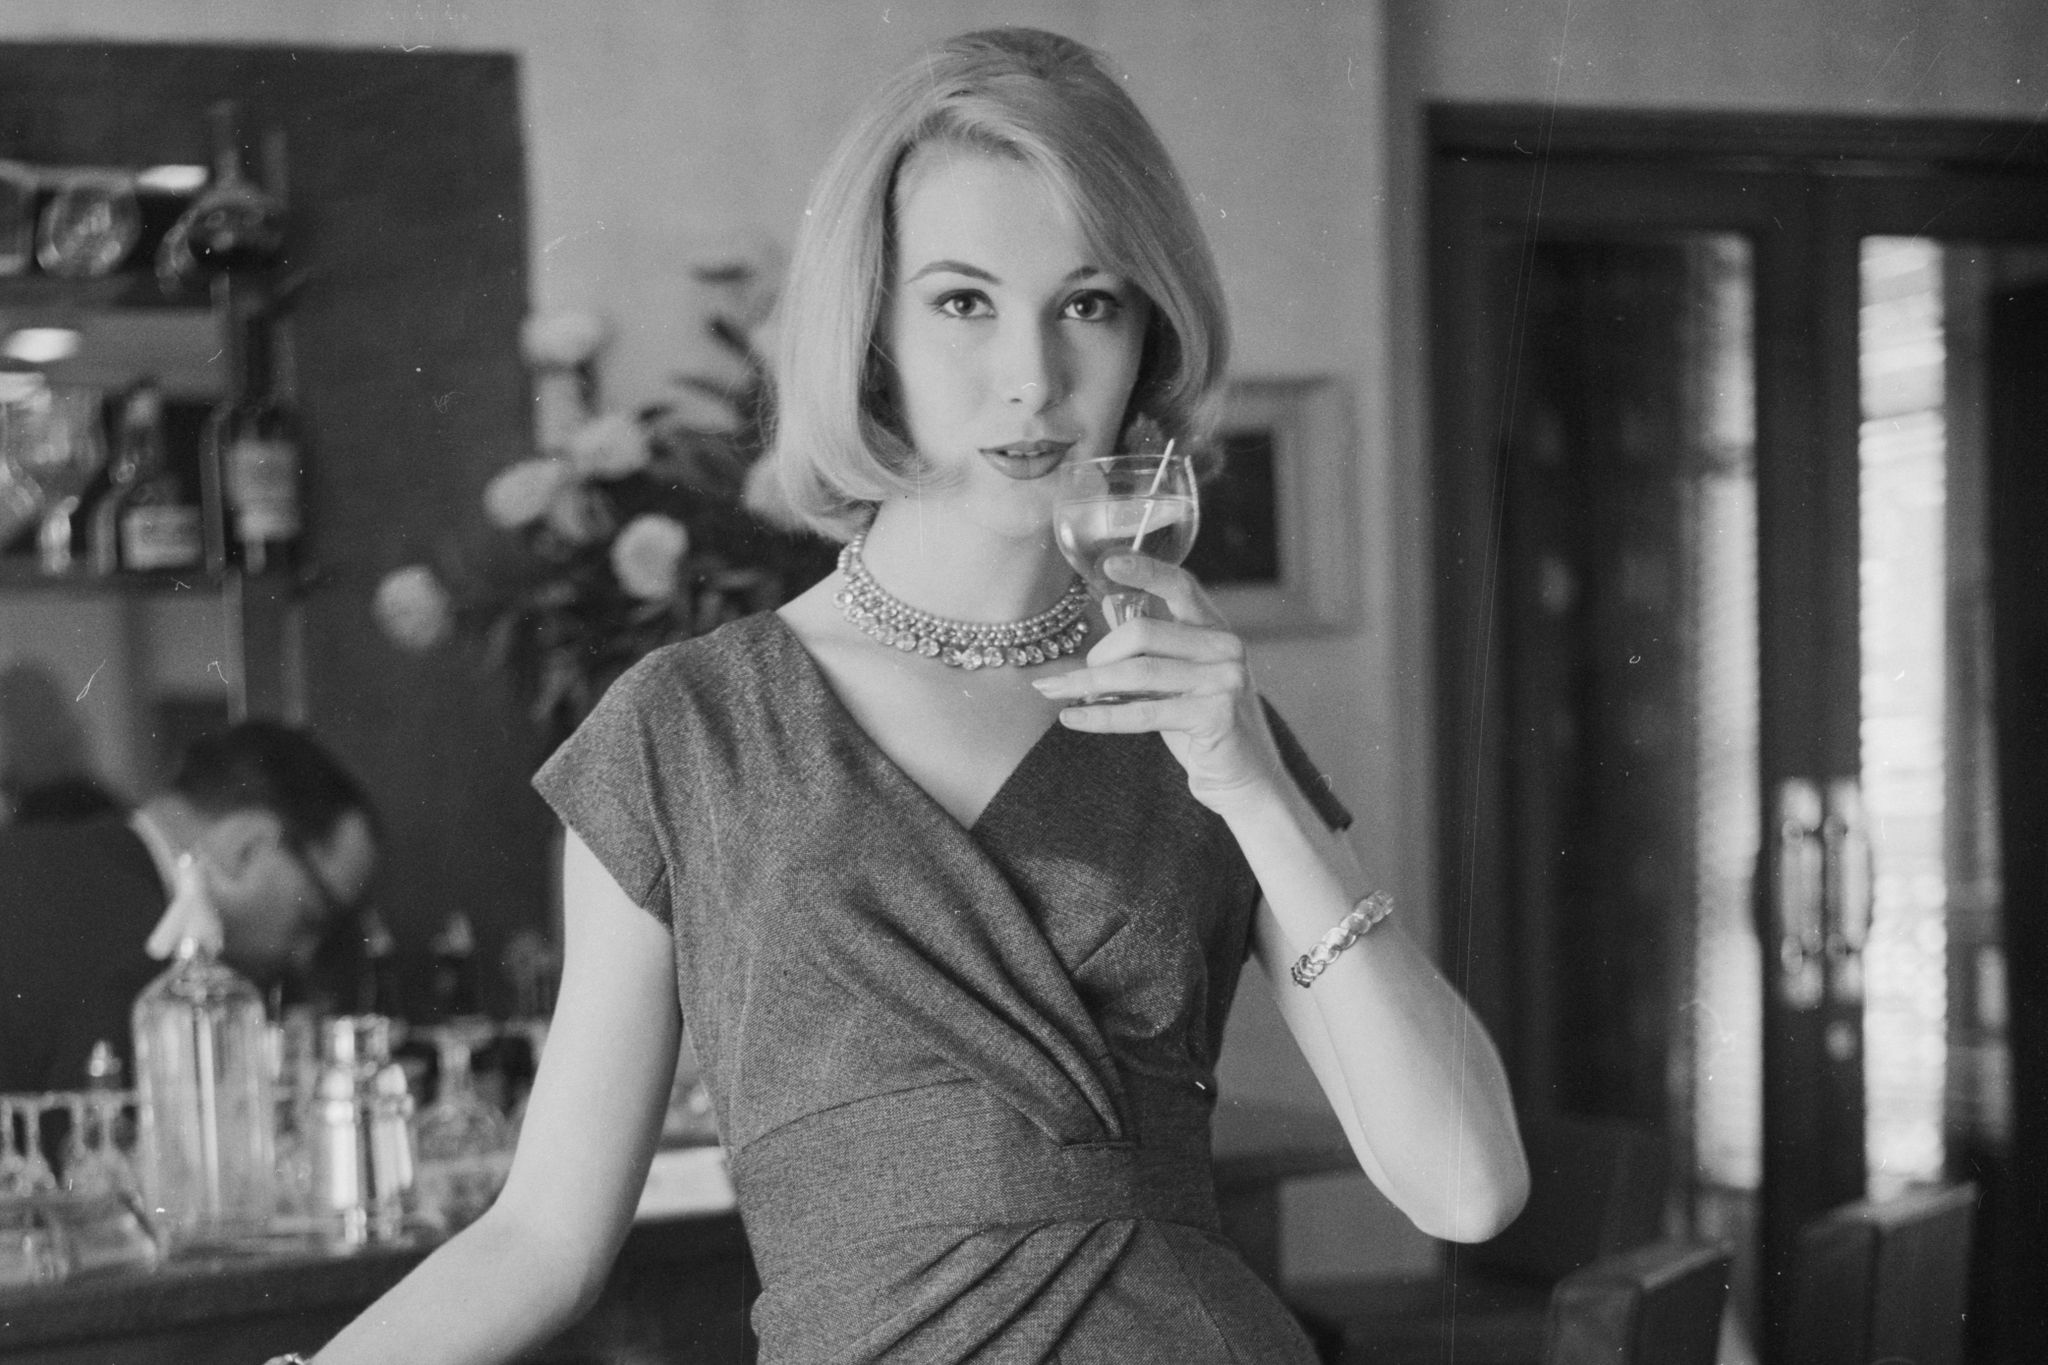 mujer elegante se bebe una copa de chardonnay 1960